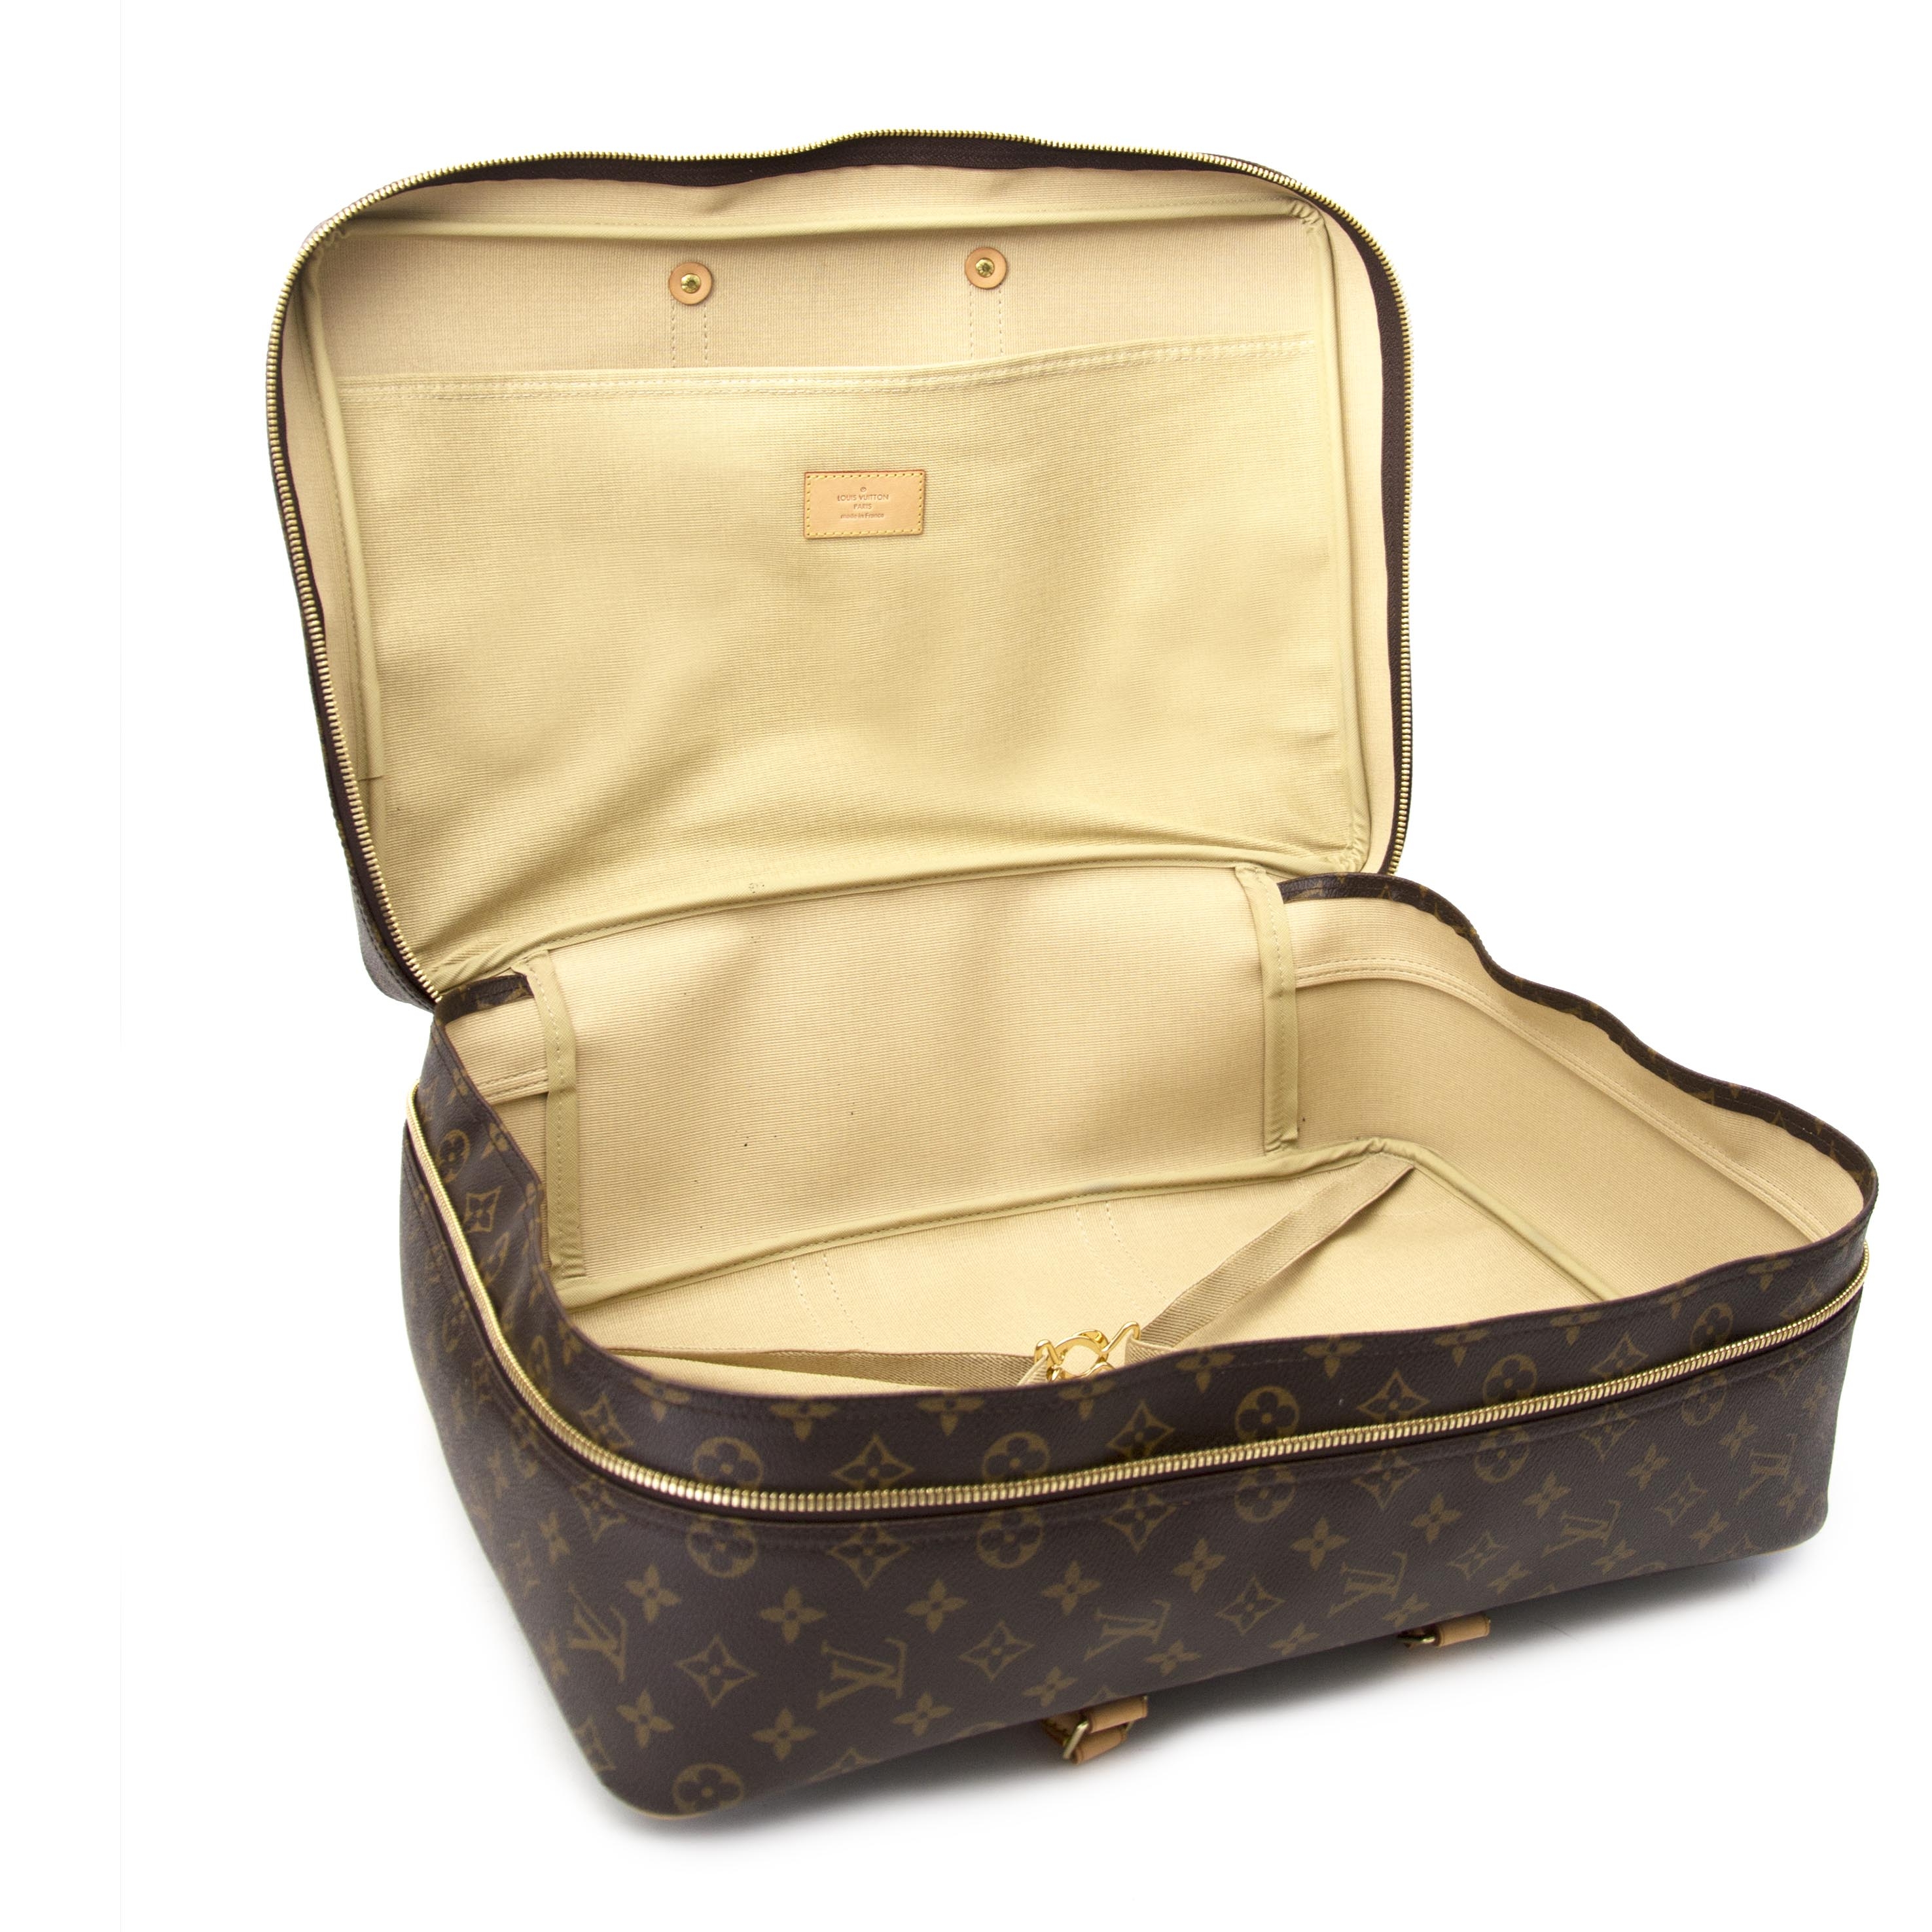 Authentic LOUIS VUITTON Sirius 45 Monogram Suitcase Travel